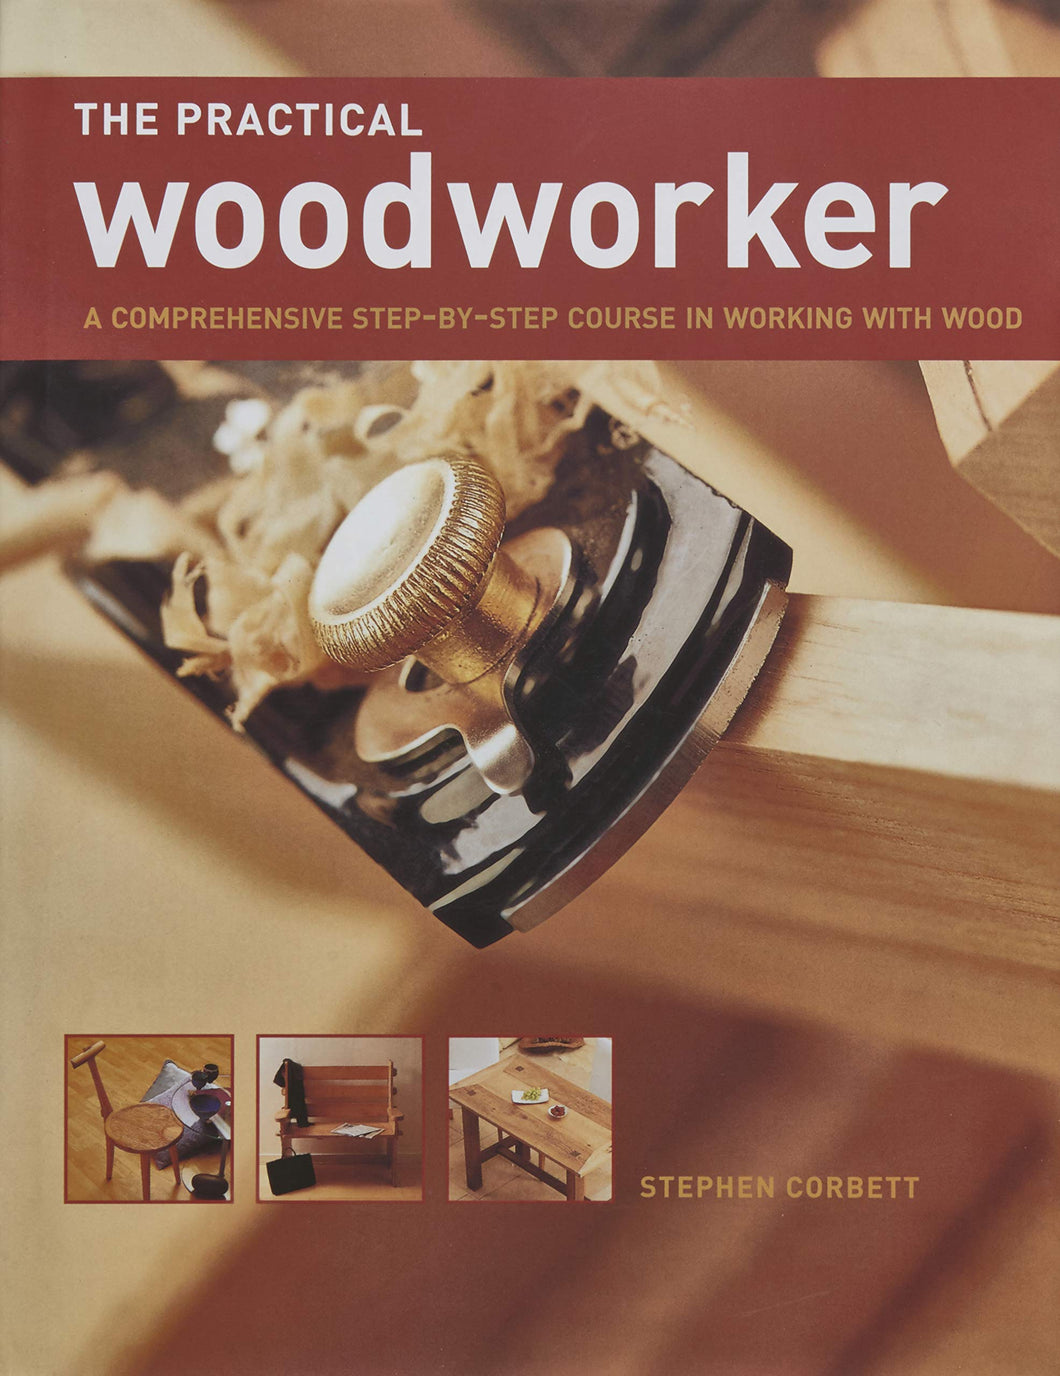 The Practical Woodworker, Stephen Corbett